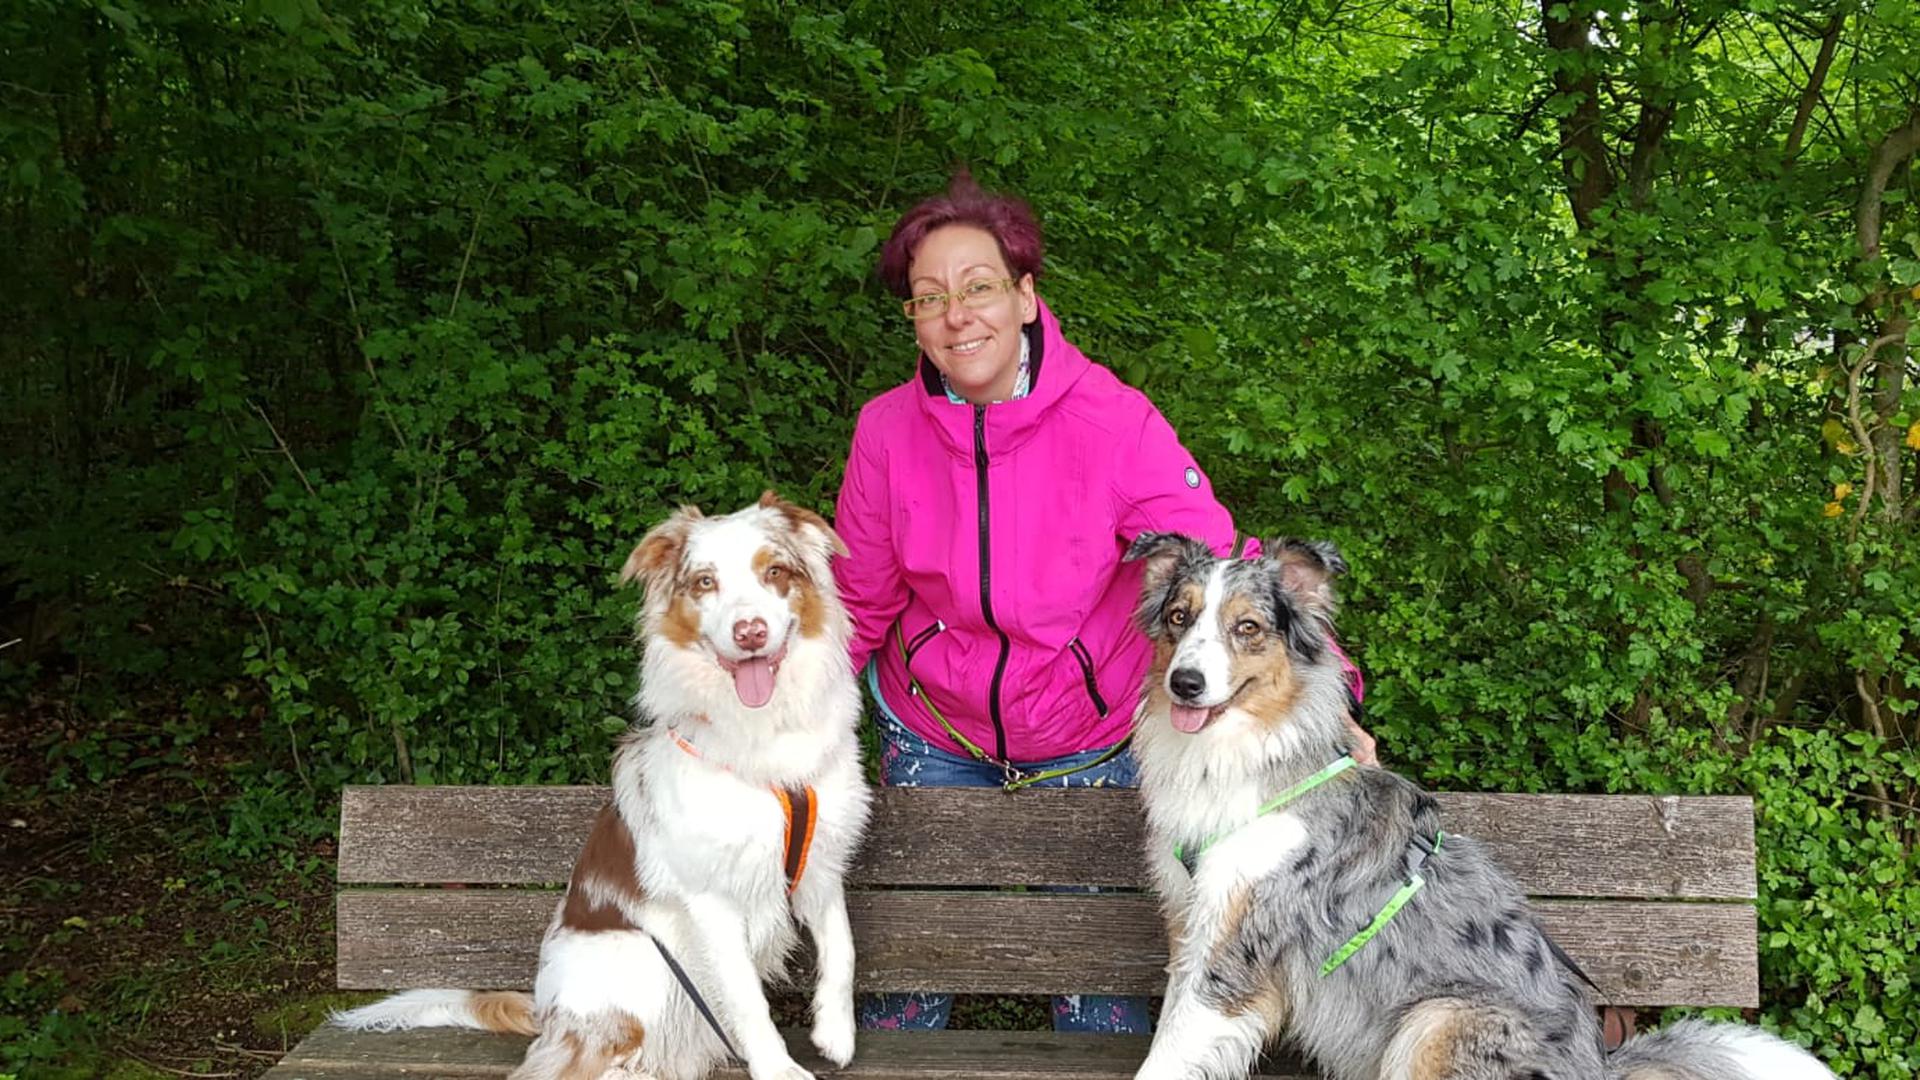 Kerstin Dieckelt mit Fee (rechts) und Krümel (links) nach denen sie ihre Manufaktur für Hunde-Belohnungshappen benannt hat